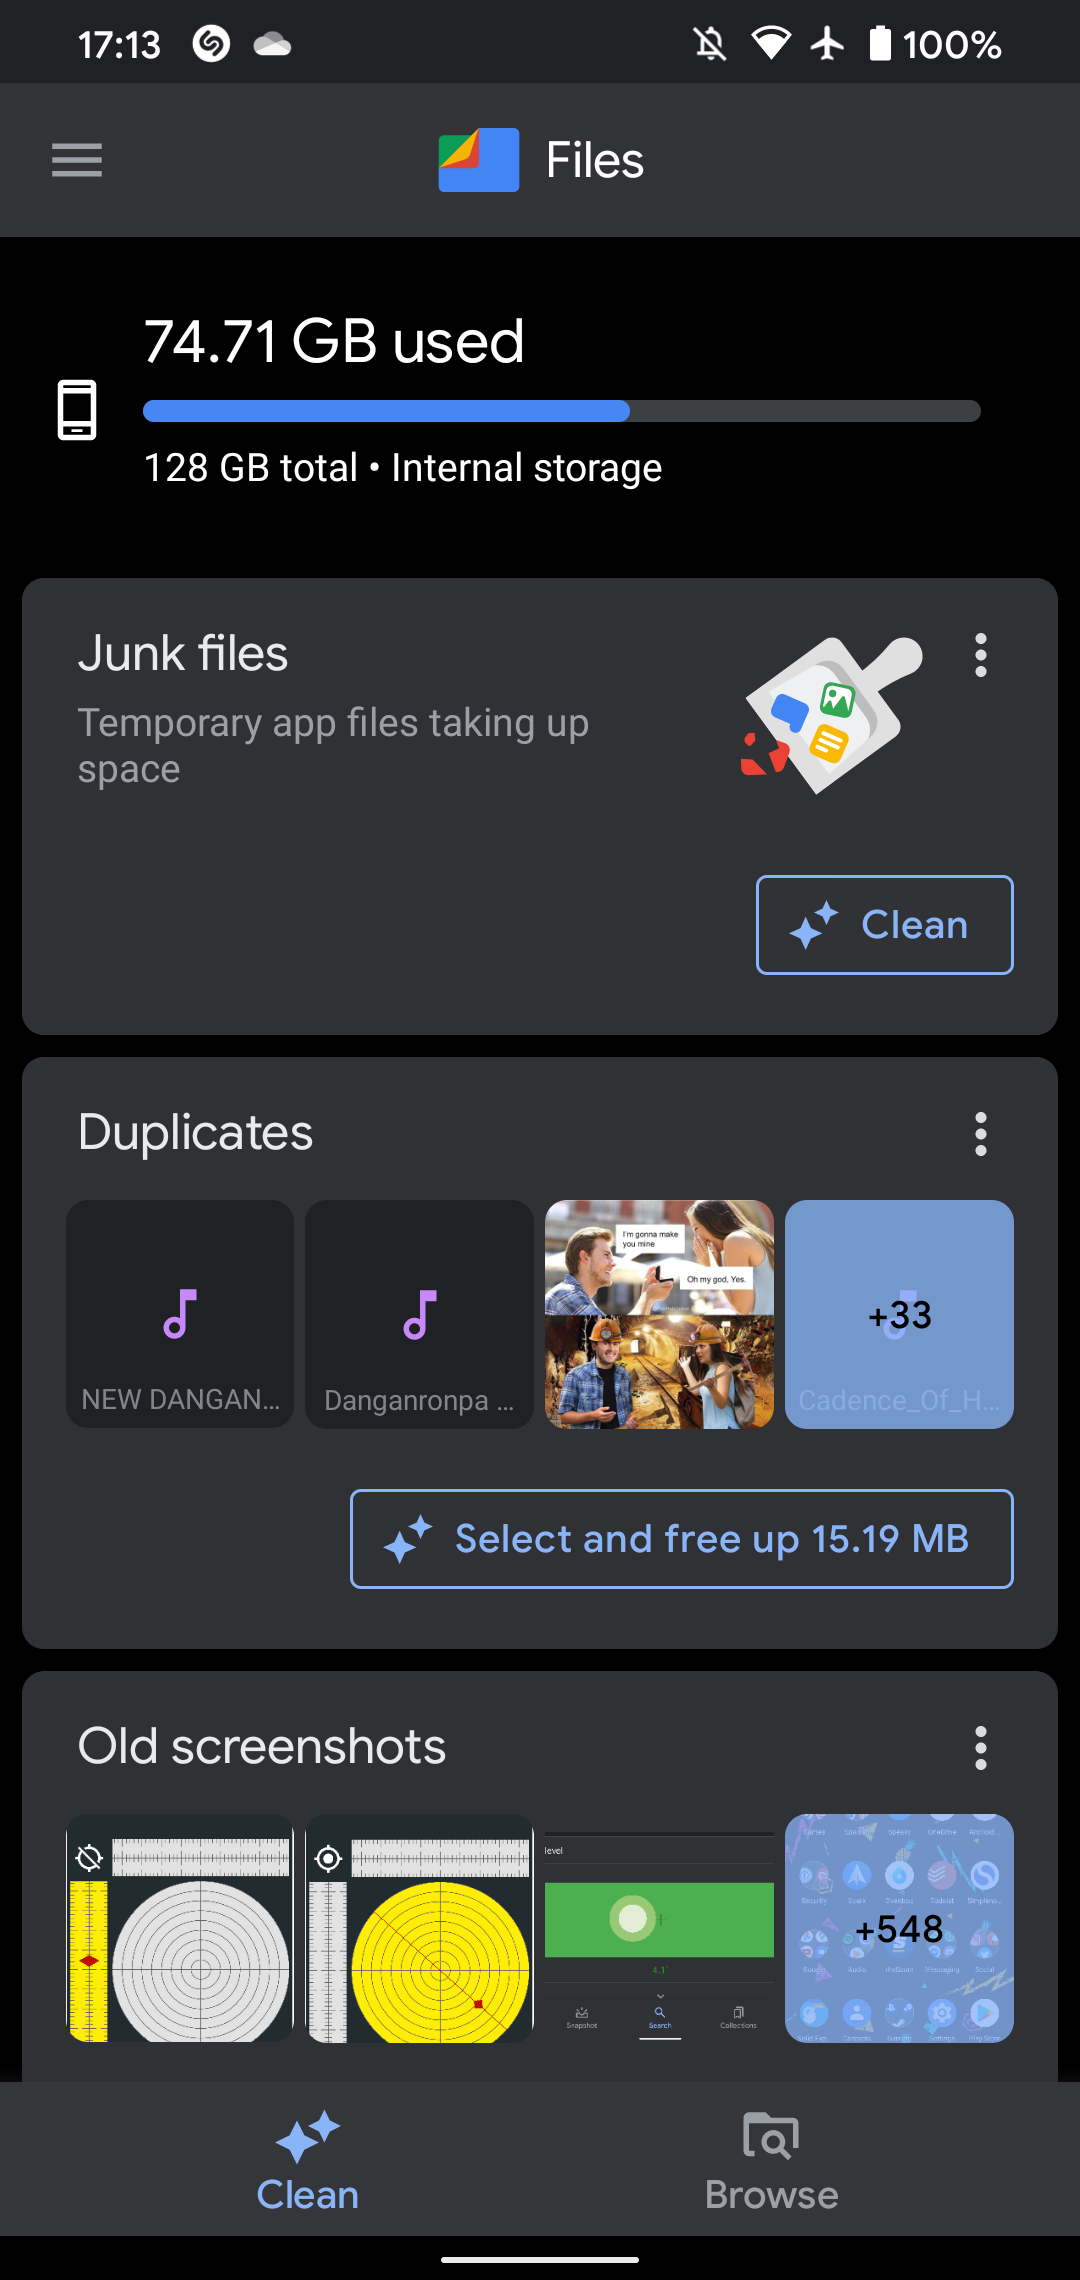 Files Go Clean Tab